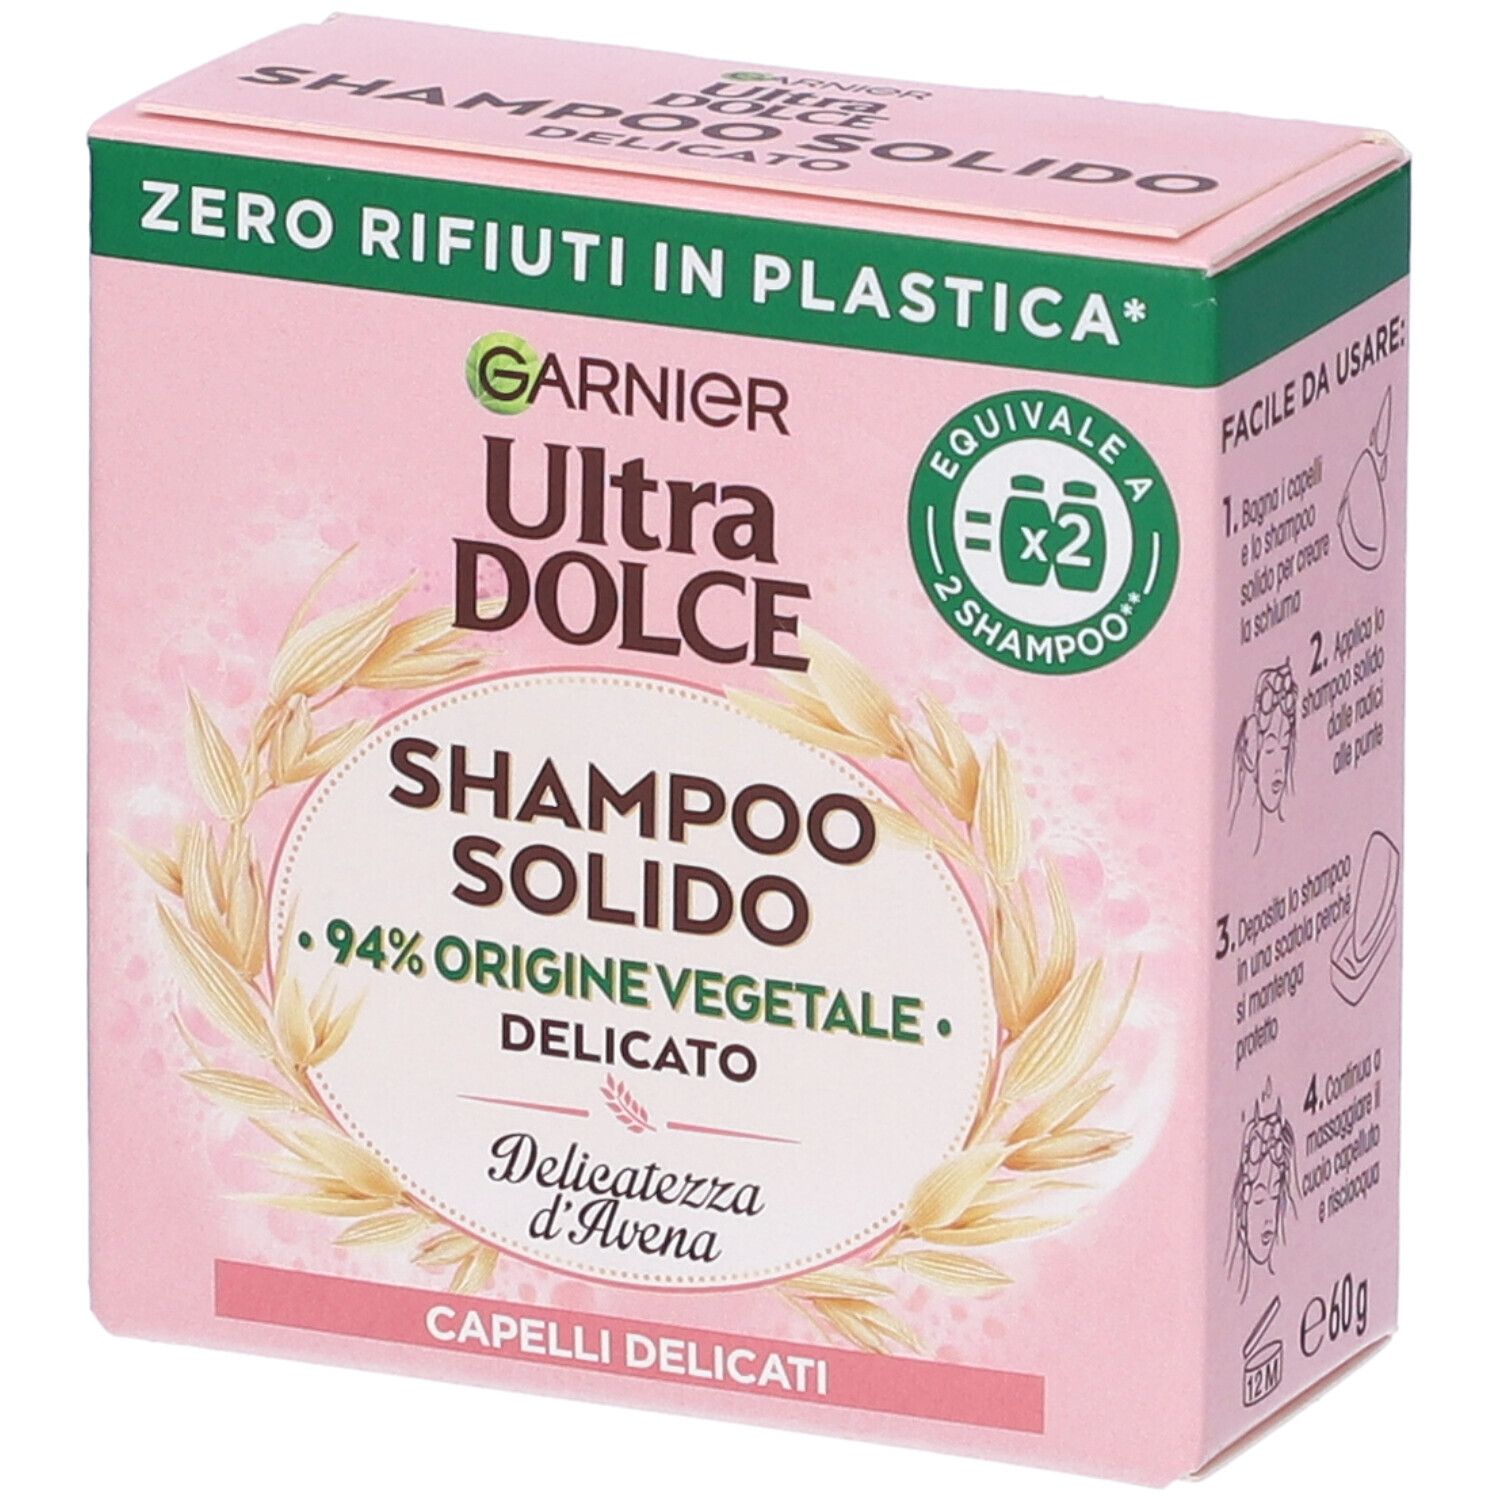 Image of Garnier Ultra Dolce Shampoo Solido Delicatezza D’Avena, Per Cute sensibile e Capelli Delicati, Con packaging 100% ecologico plastic-free, 60 gr